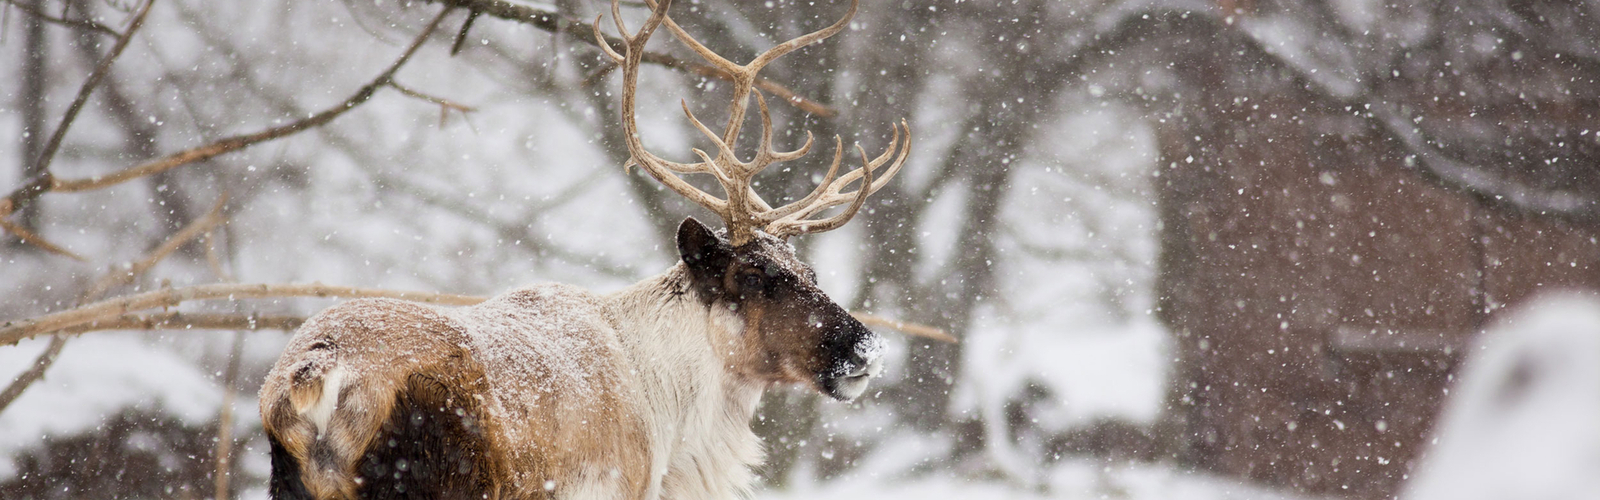 Snowy reindeer